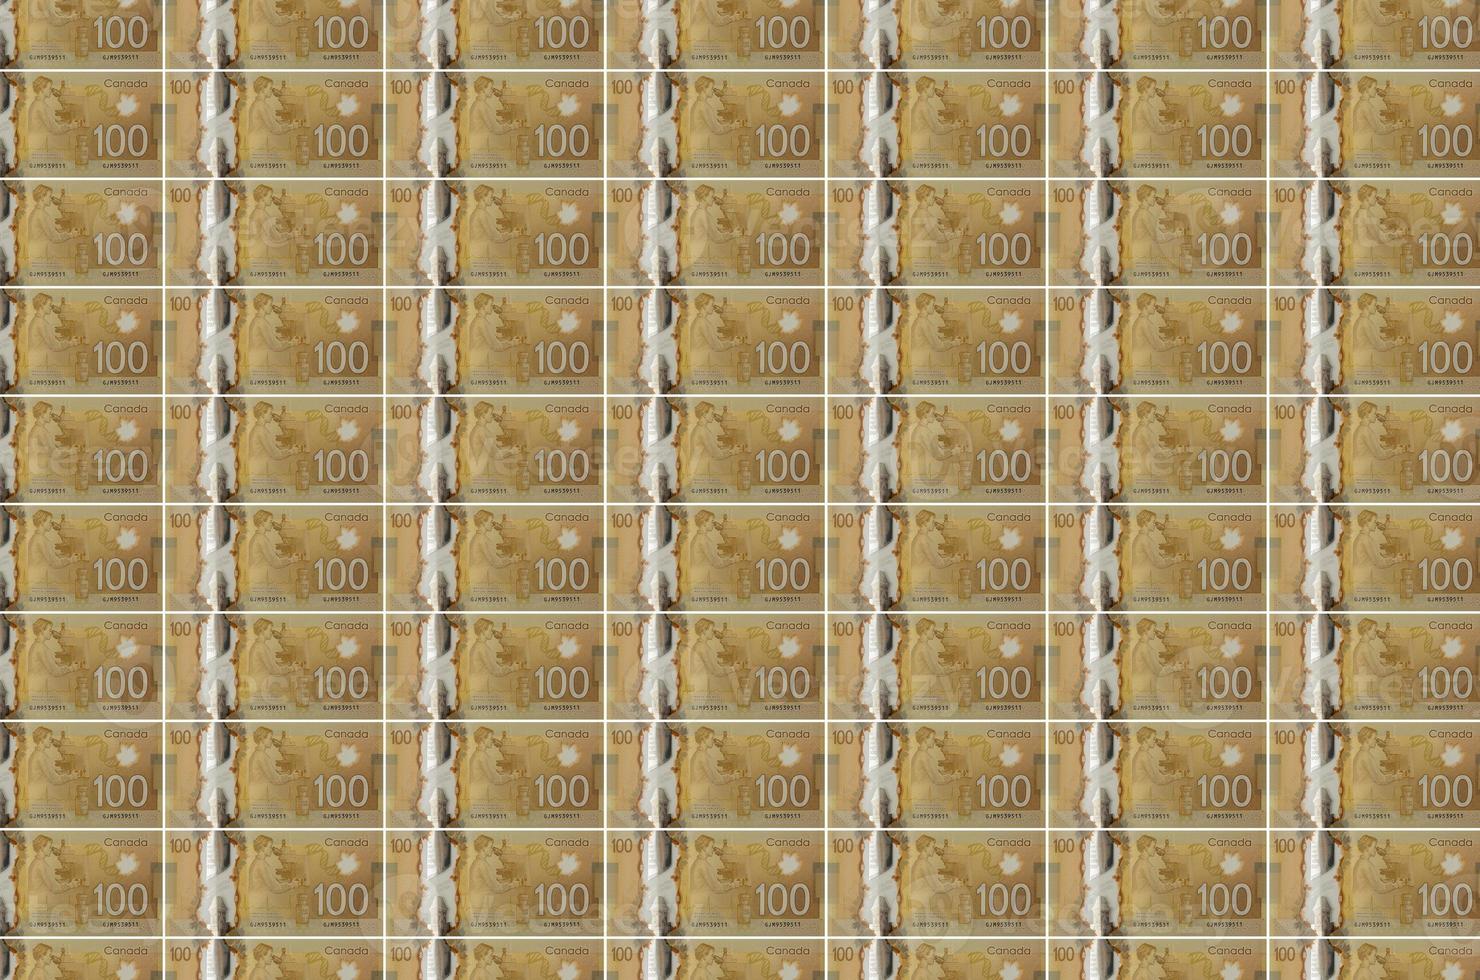 Billets de 100 dollars canadiens imprimés dans un convoyeur de production monétaire. collage de nombreuses factures. concept de dévaluation monétaire photo